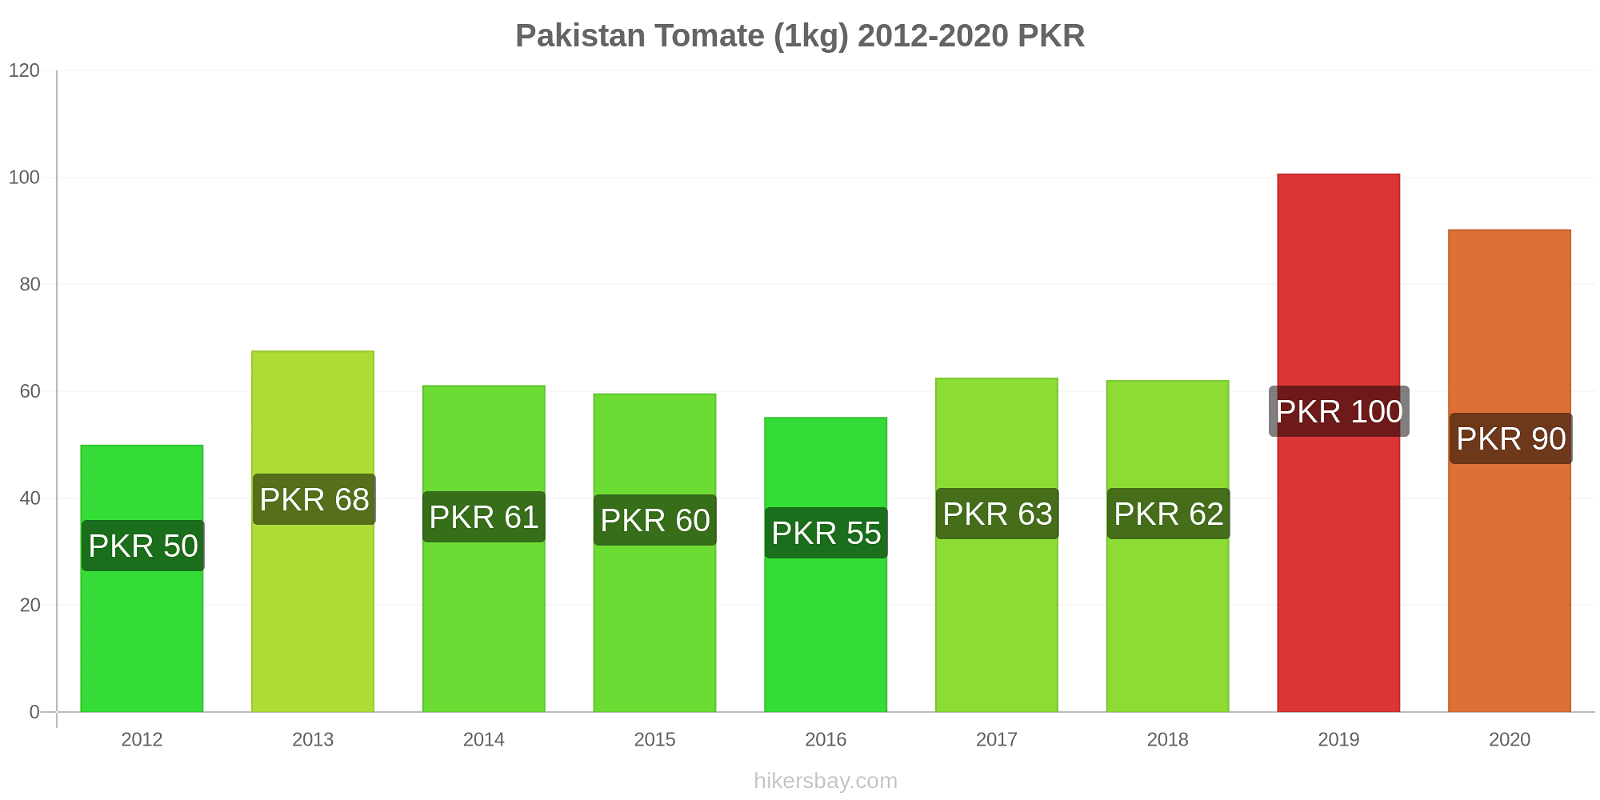 Pakistan changements de prix Tomate (1kg) hikersbay.com